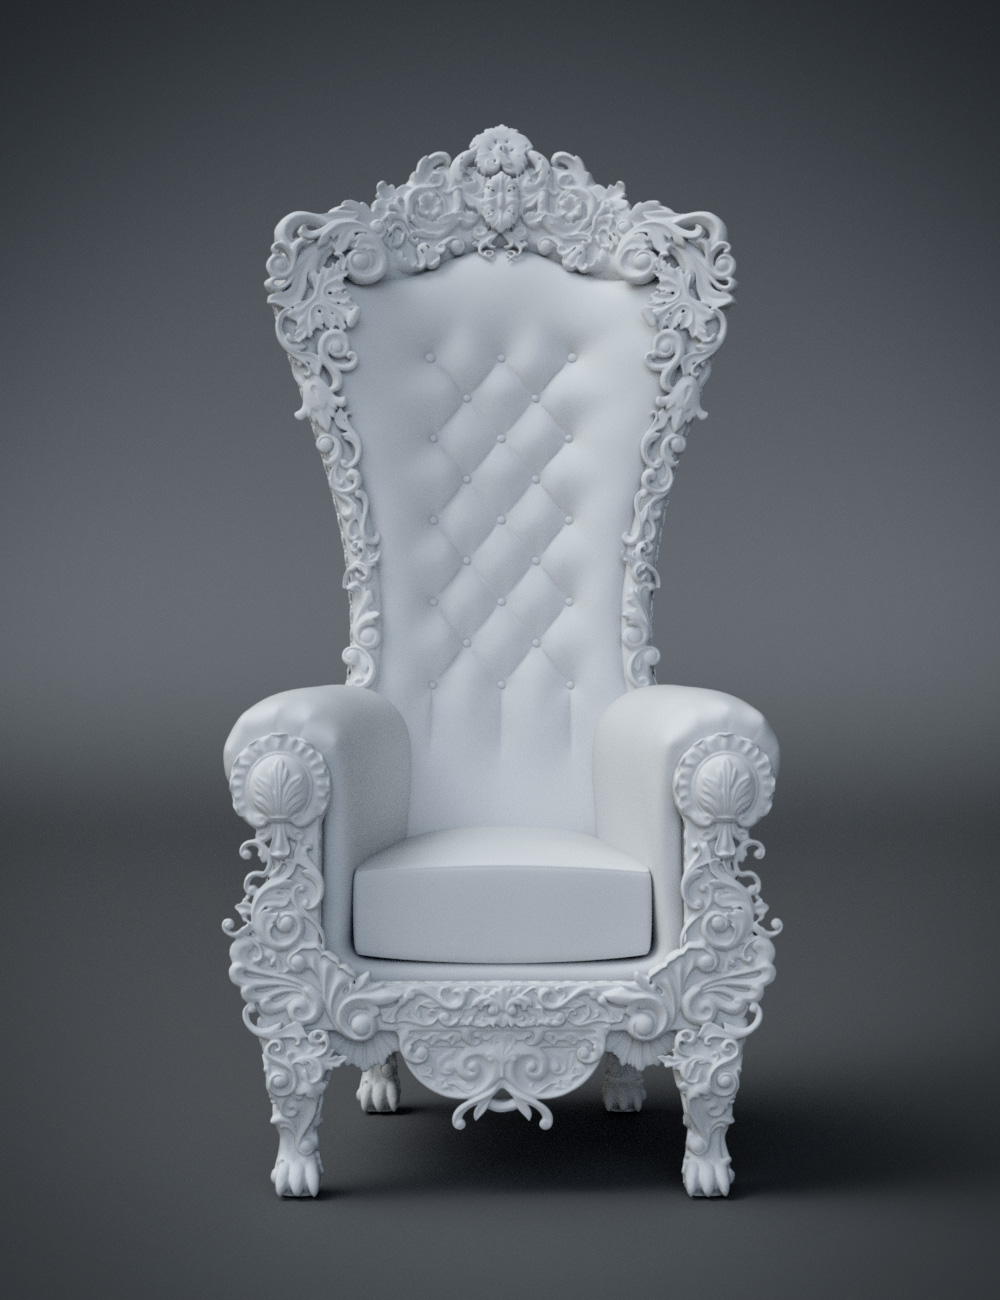 Royal Throne by: Hypertaf, 3D Models by Daz 3D